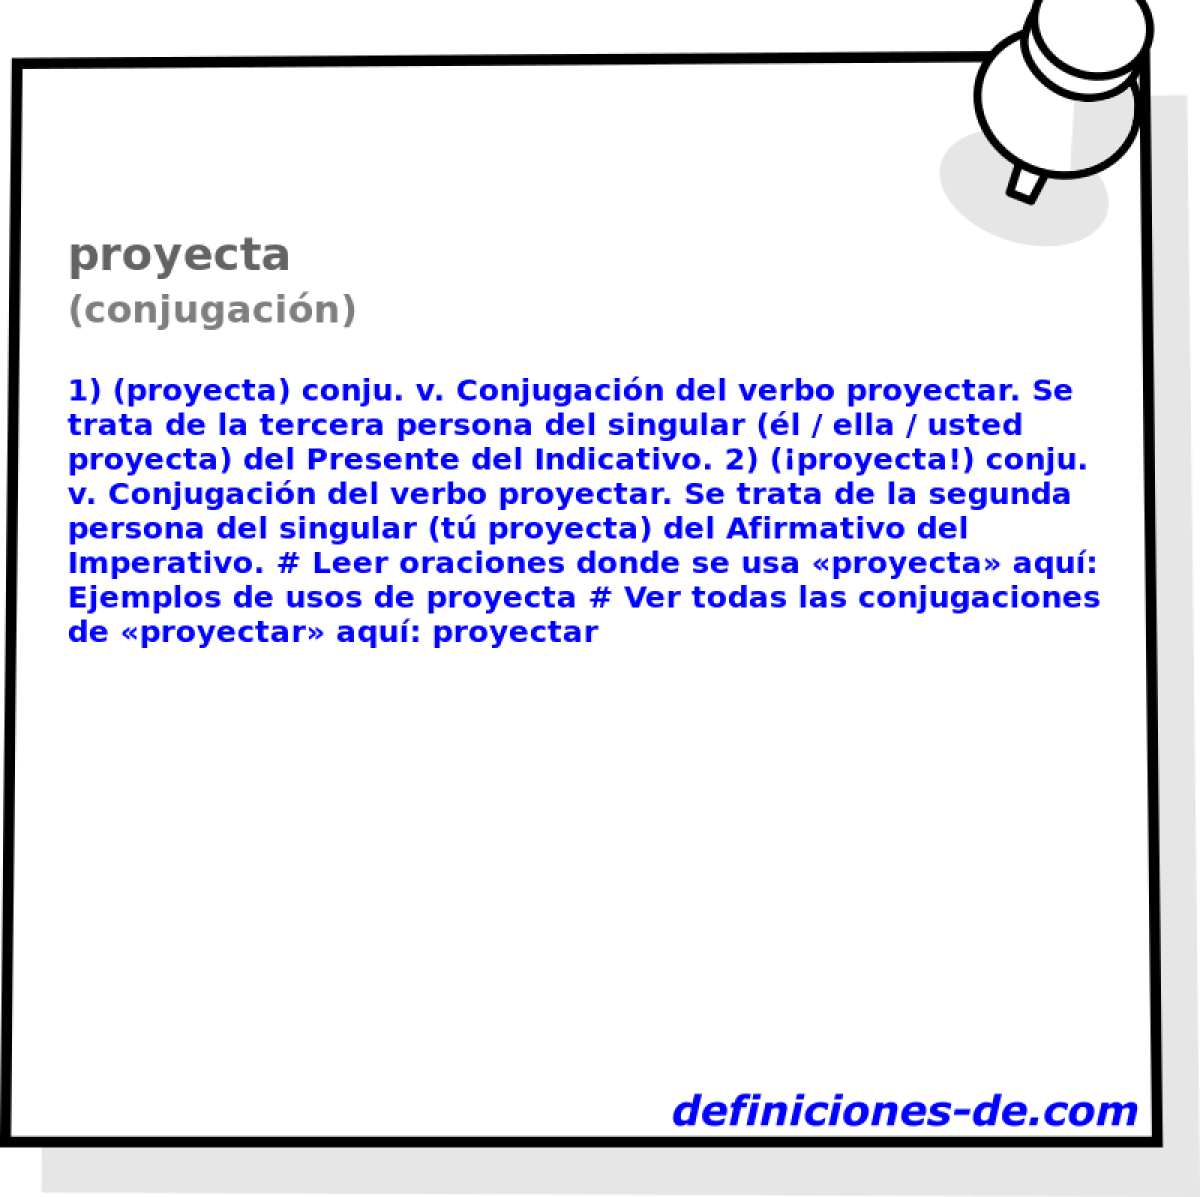 proyecta (conjugacin)